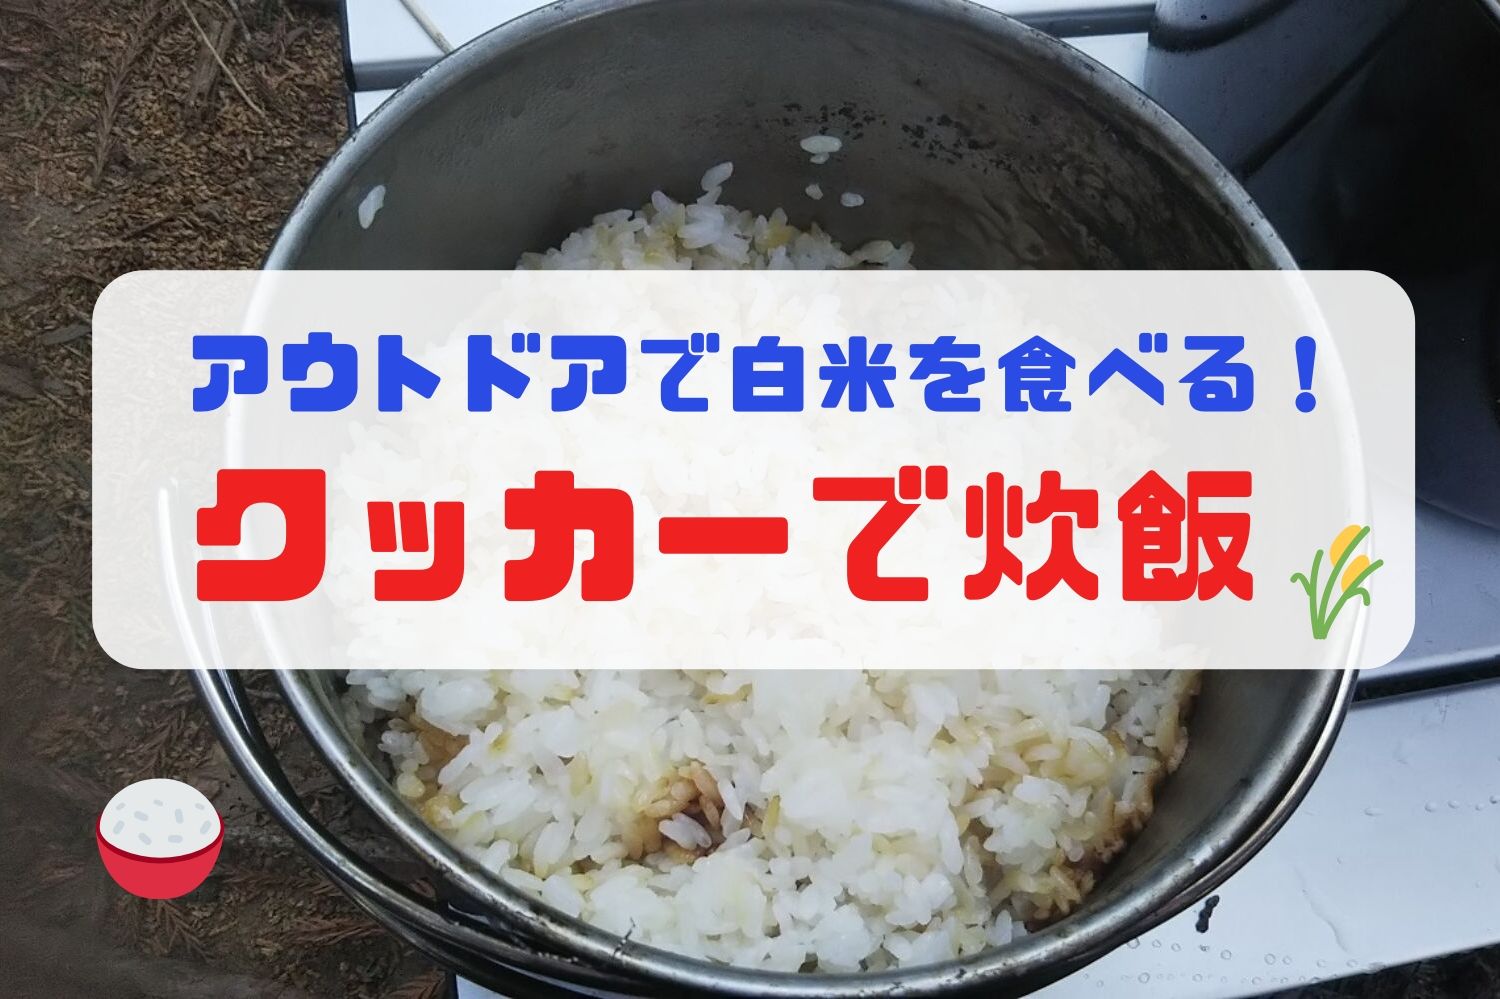 キャンプの白米は格別 クッカーでご飯を炊く方法 アウトドアライフ